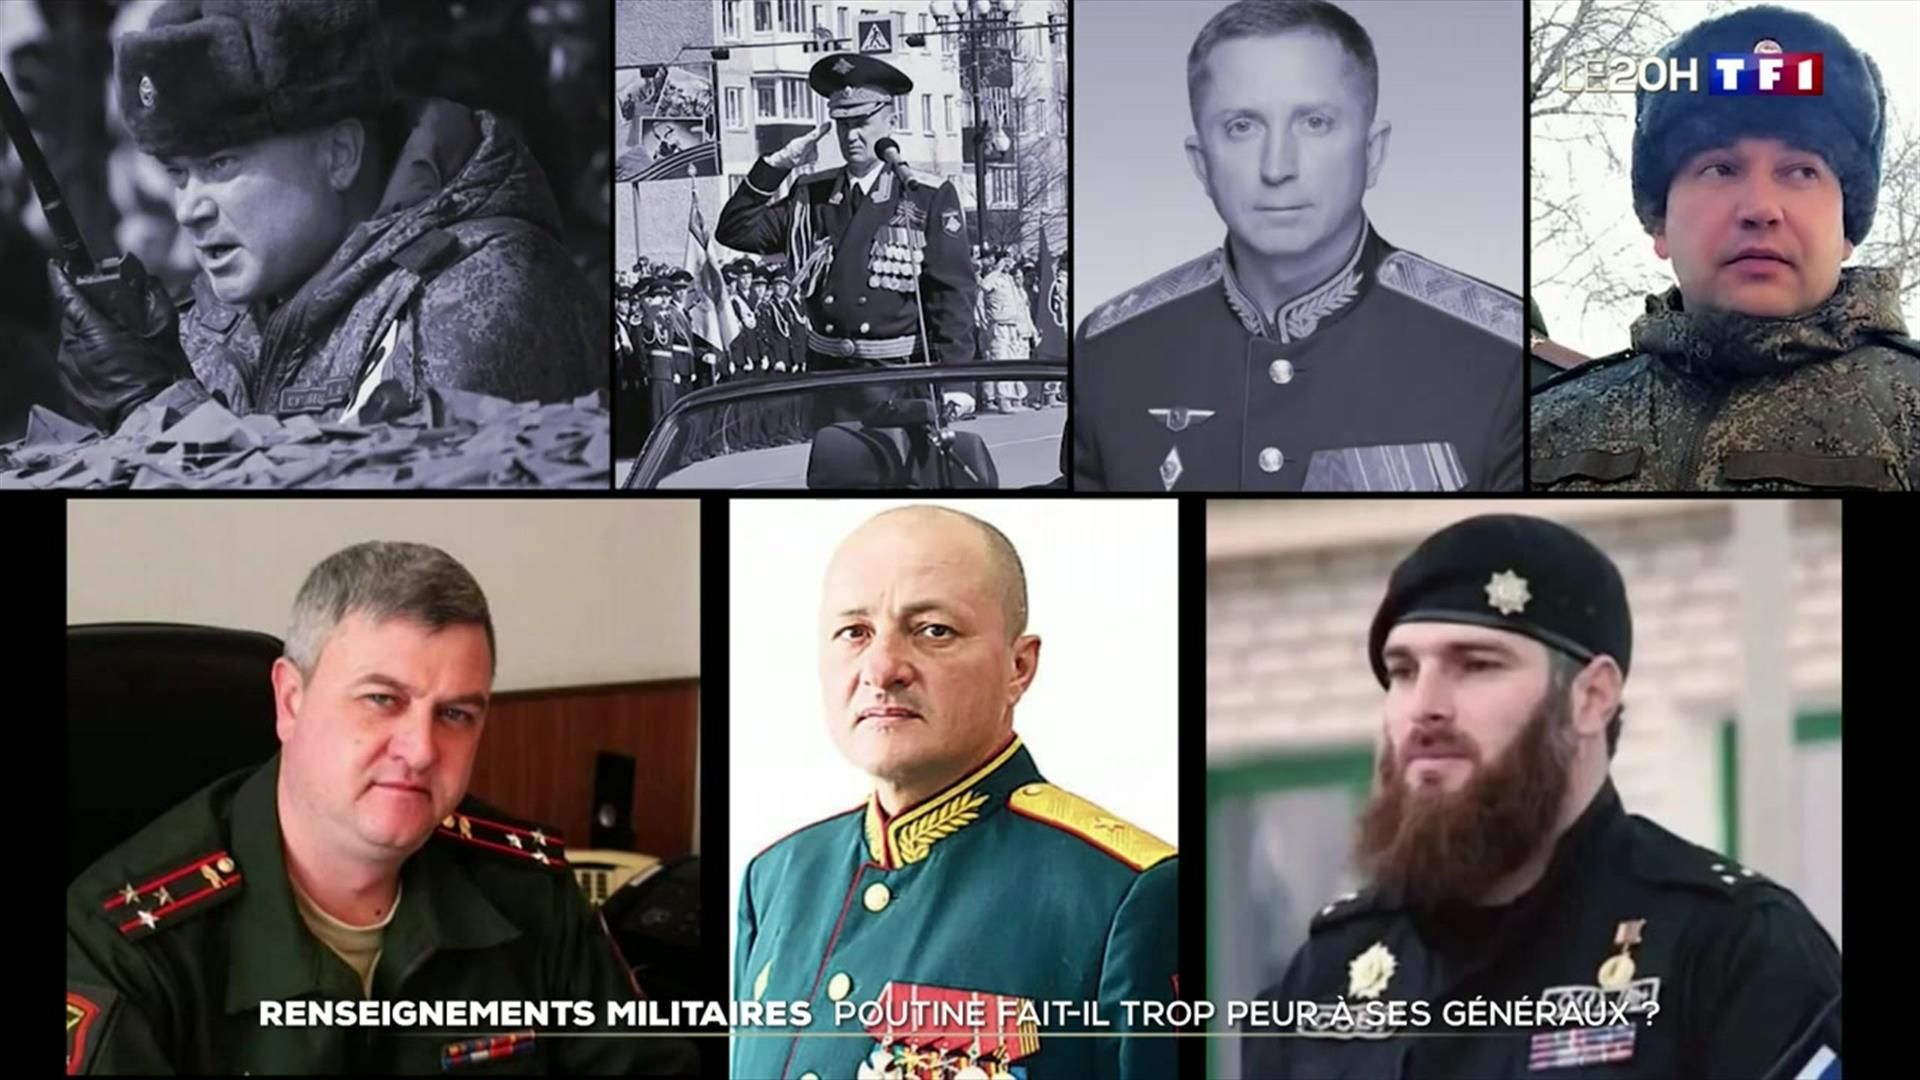 Guerre en Ukraine : Poutine fait-il trop peur à ses généraux ?